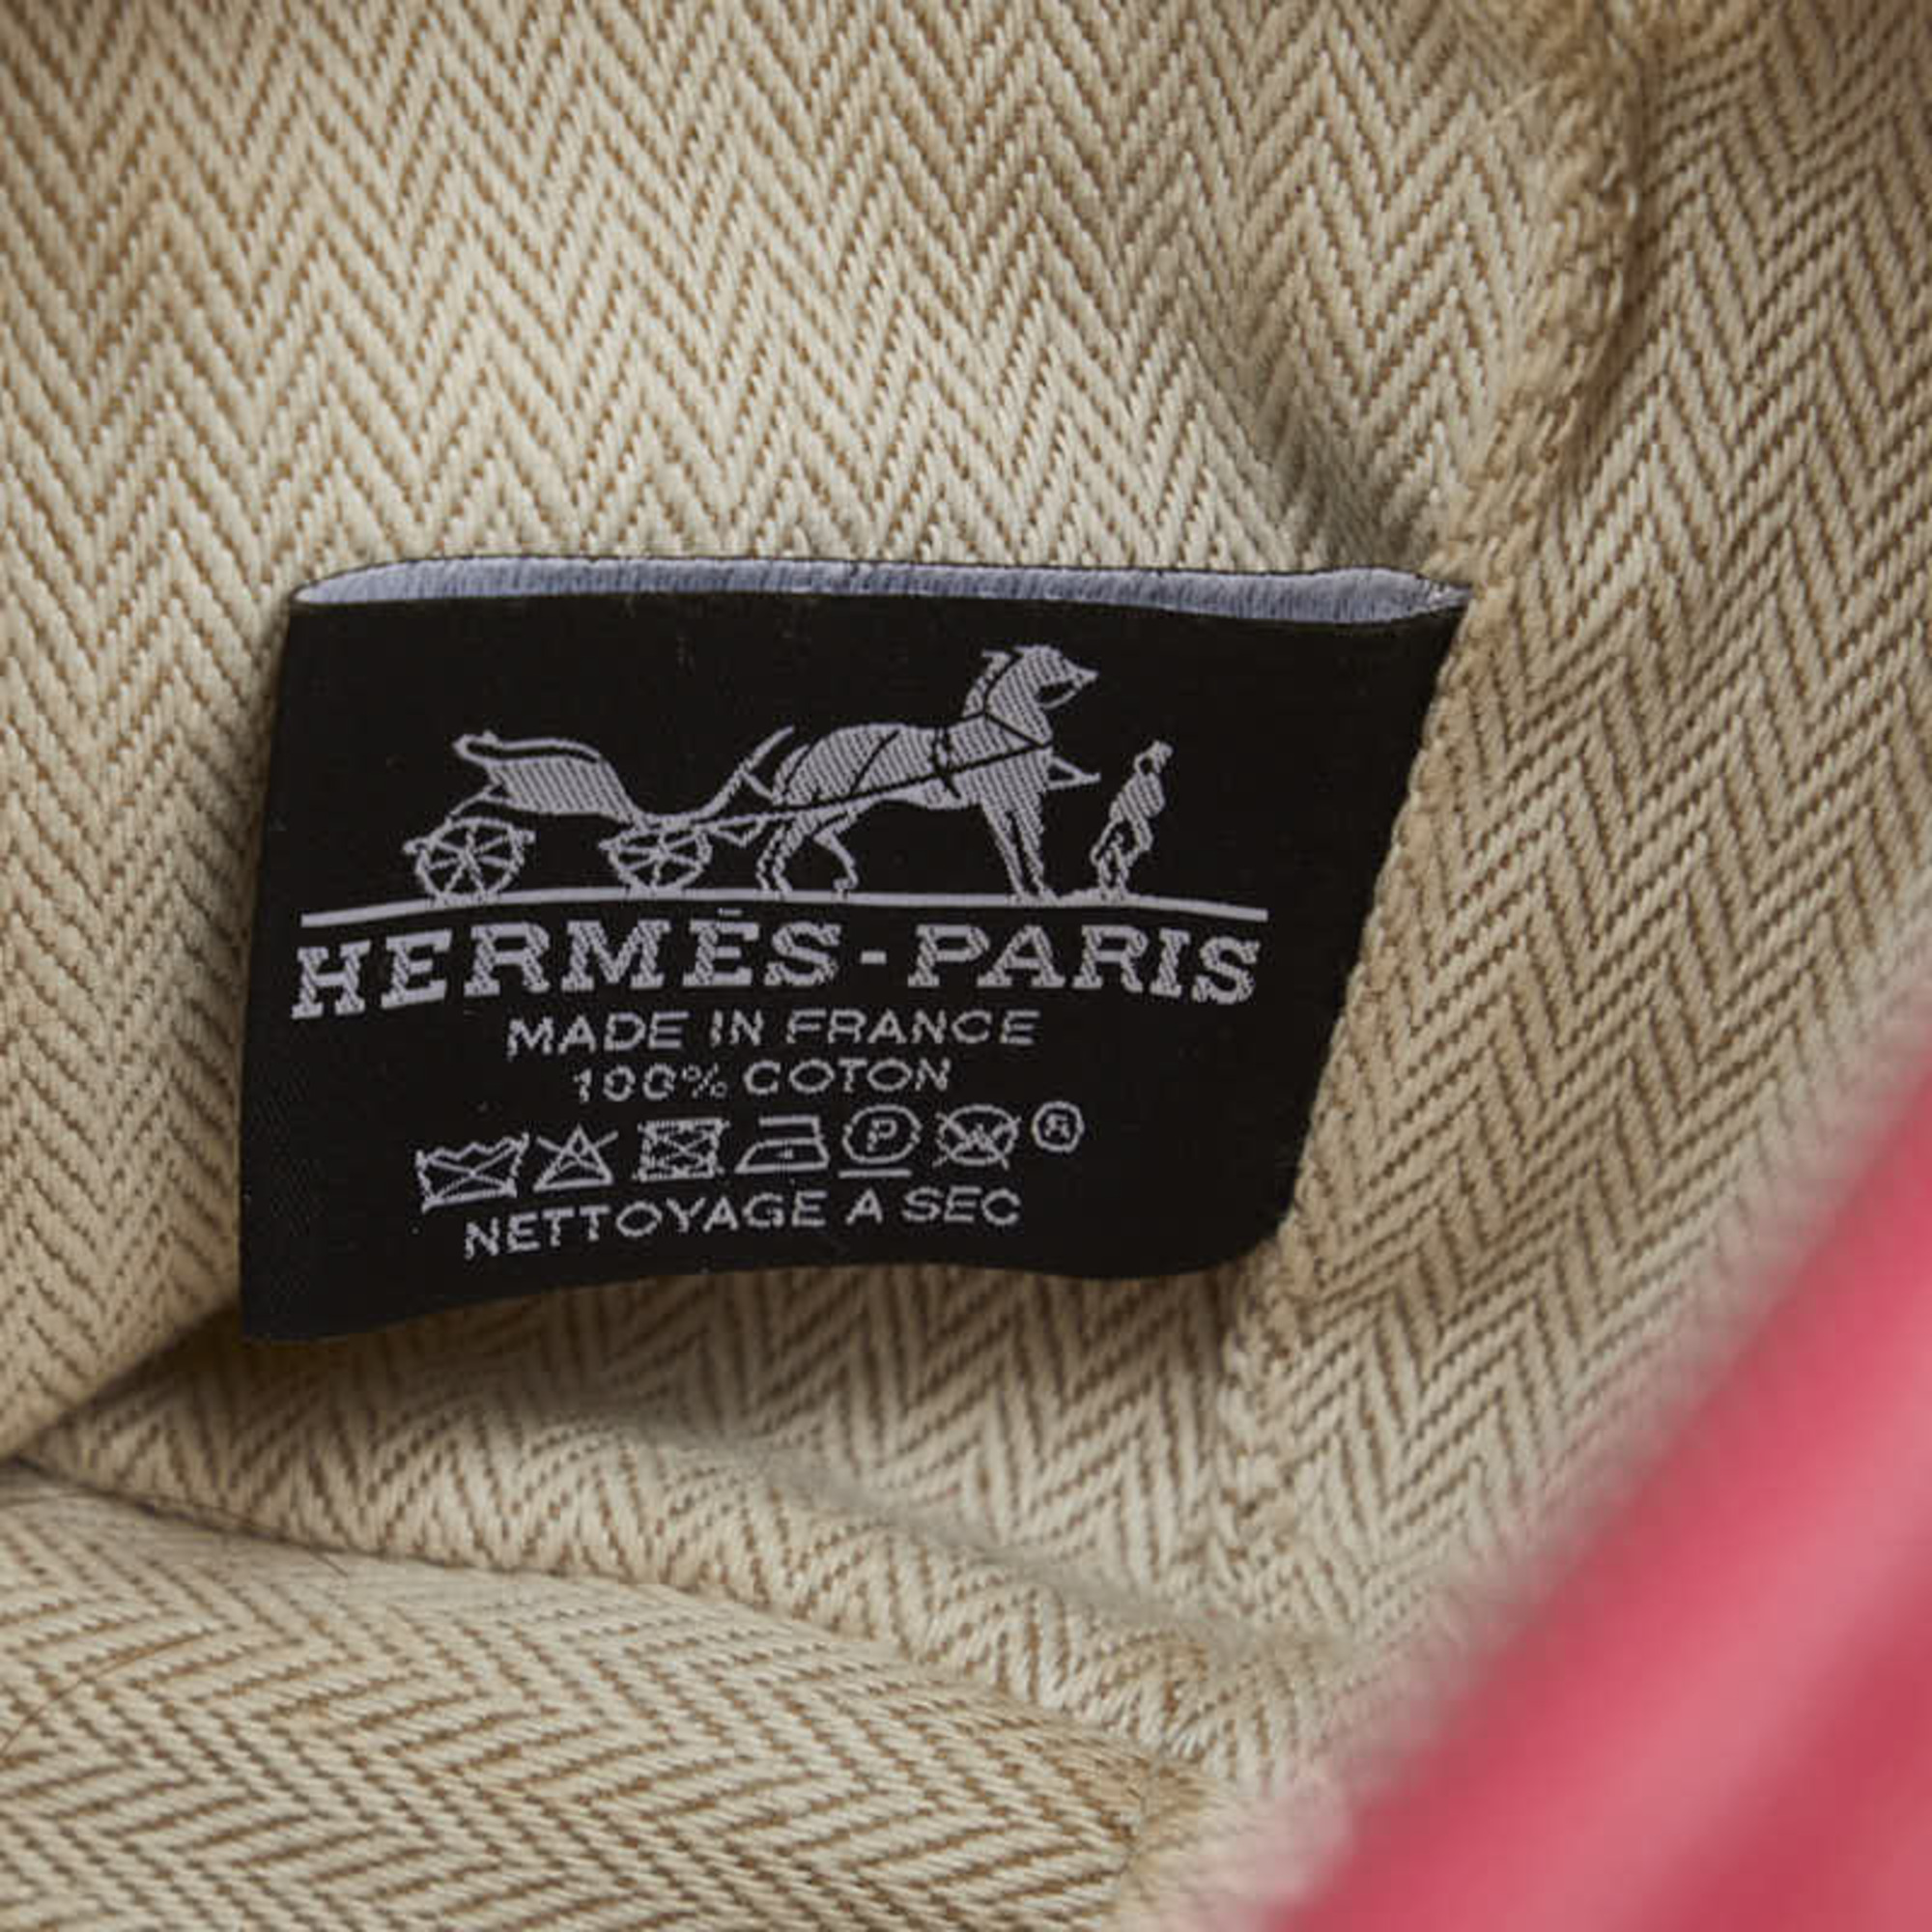 Hermes Bride A Black PM Handbag Pouch Hibiscus Pink Orange Canvas Women's HERMES